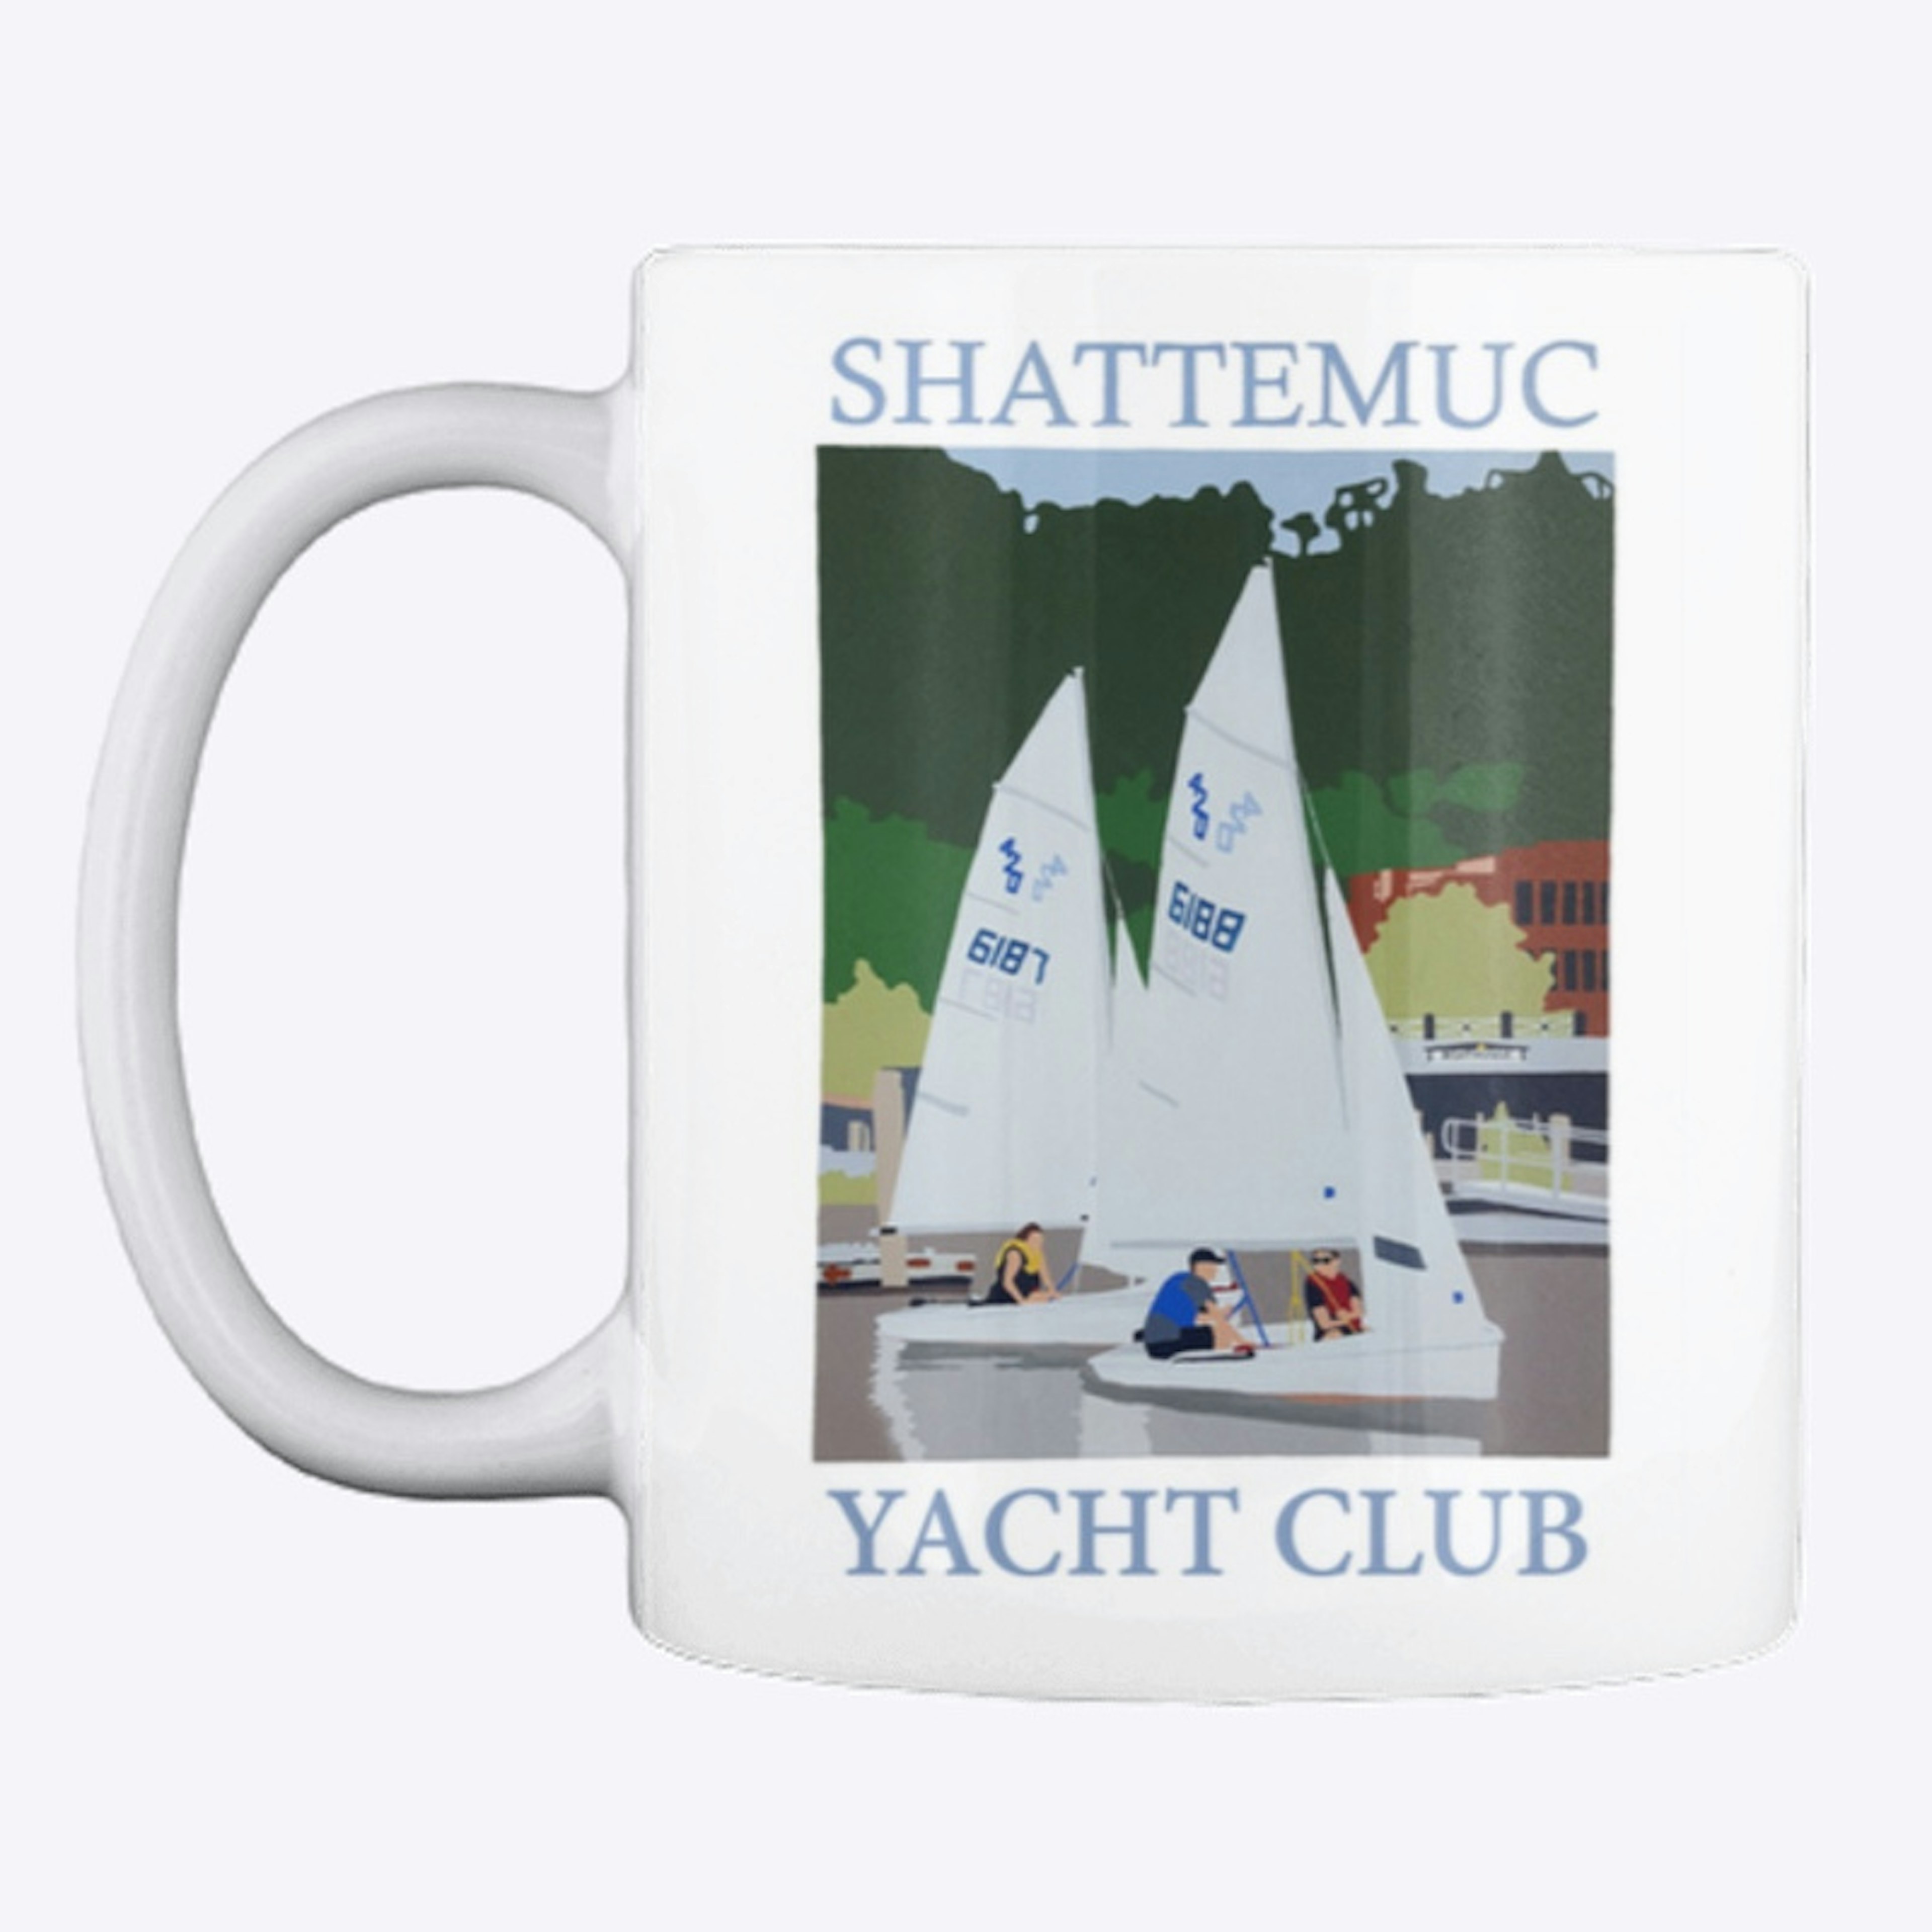 Shattemuc Yacht Club